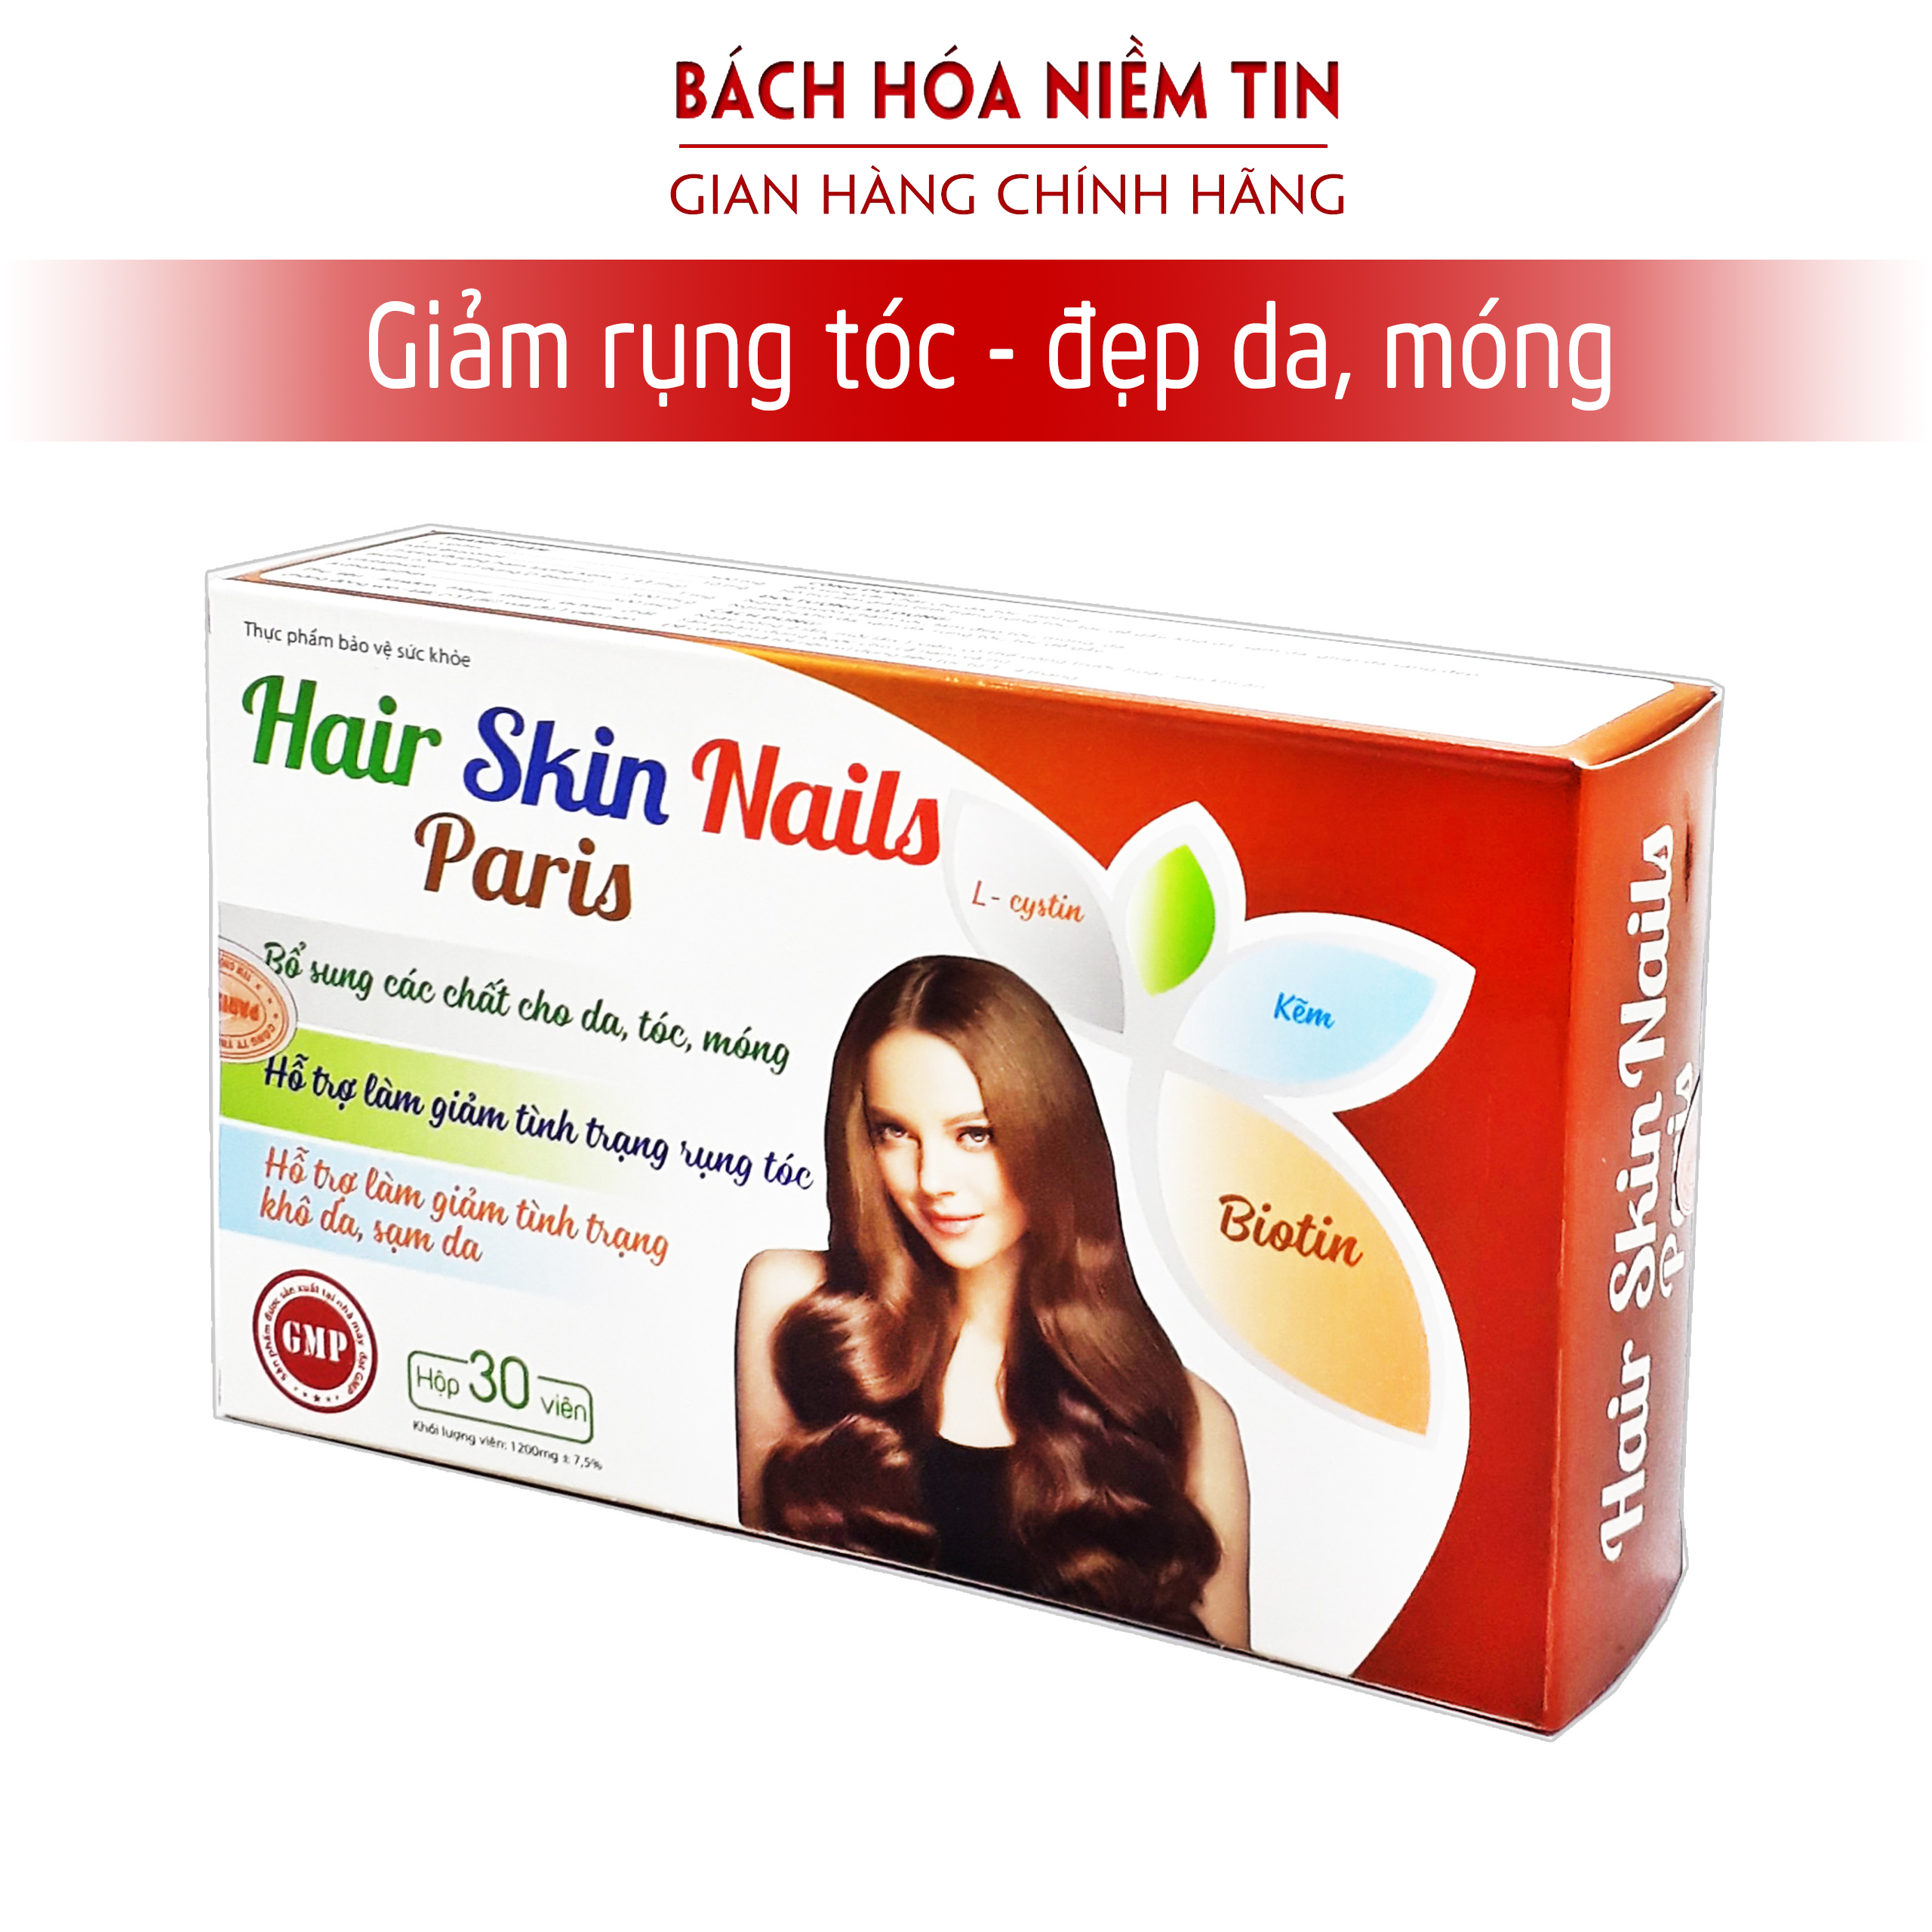 Viên uống bổ sung Biotin, Hair Skin Nails Paris giúp tóc chắc khỏe thumbnail